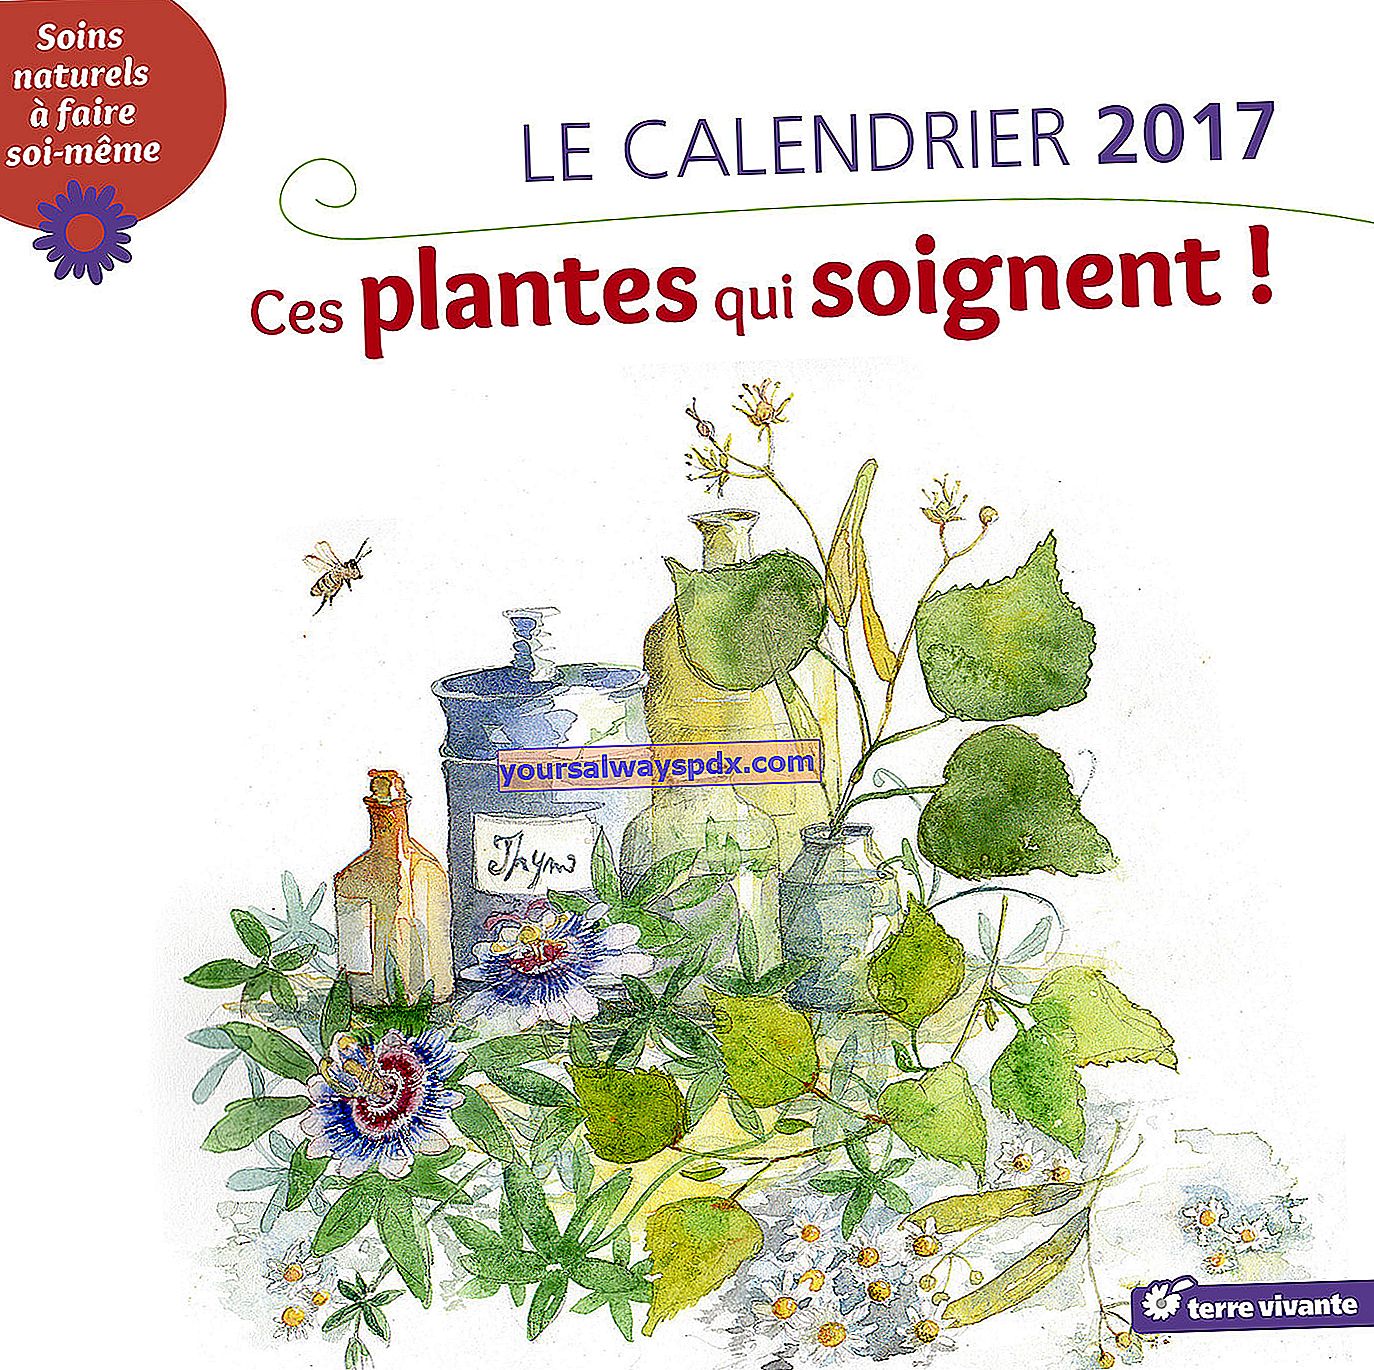 Il calendario da parete delle piante curative 2017